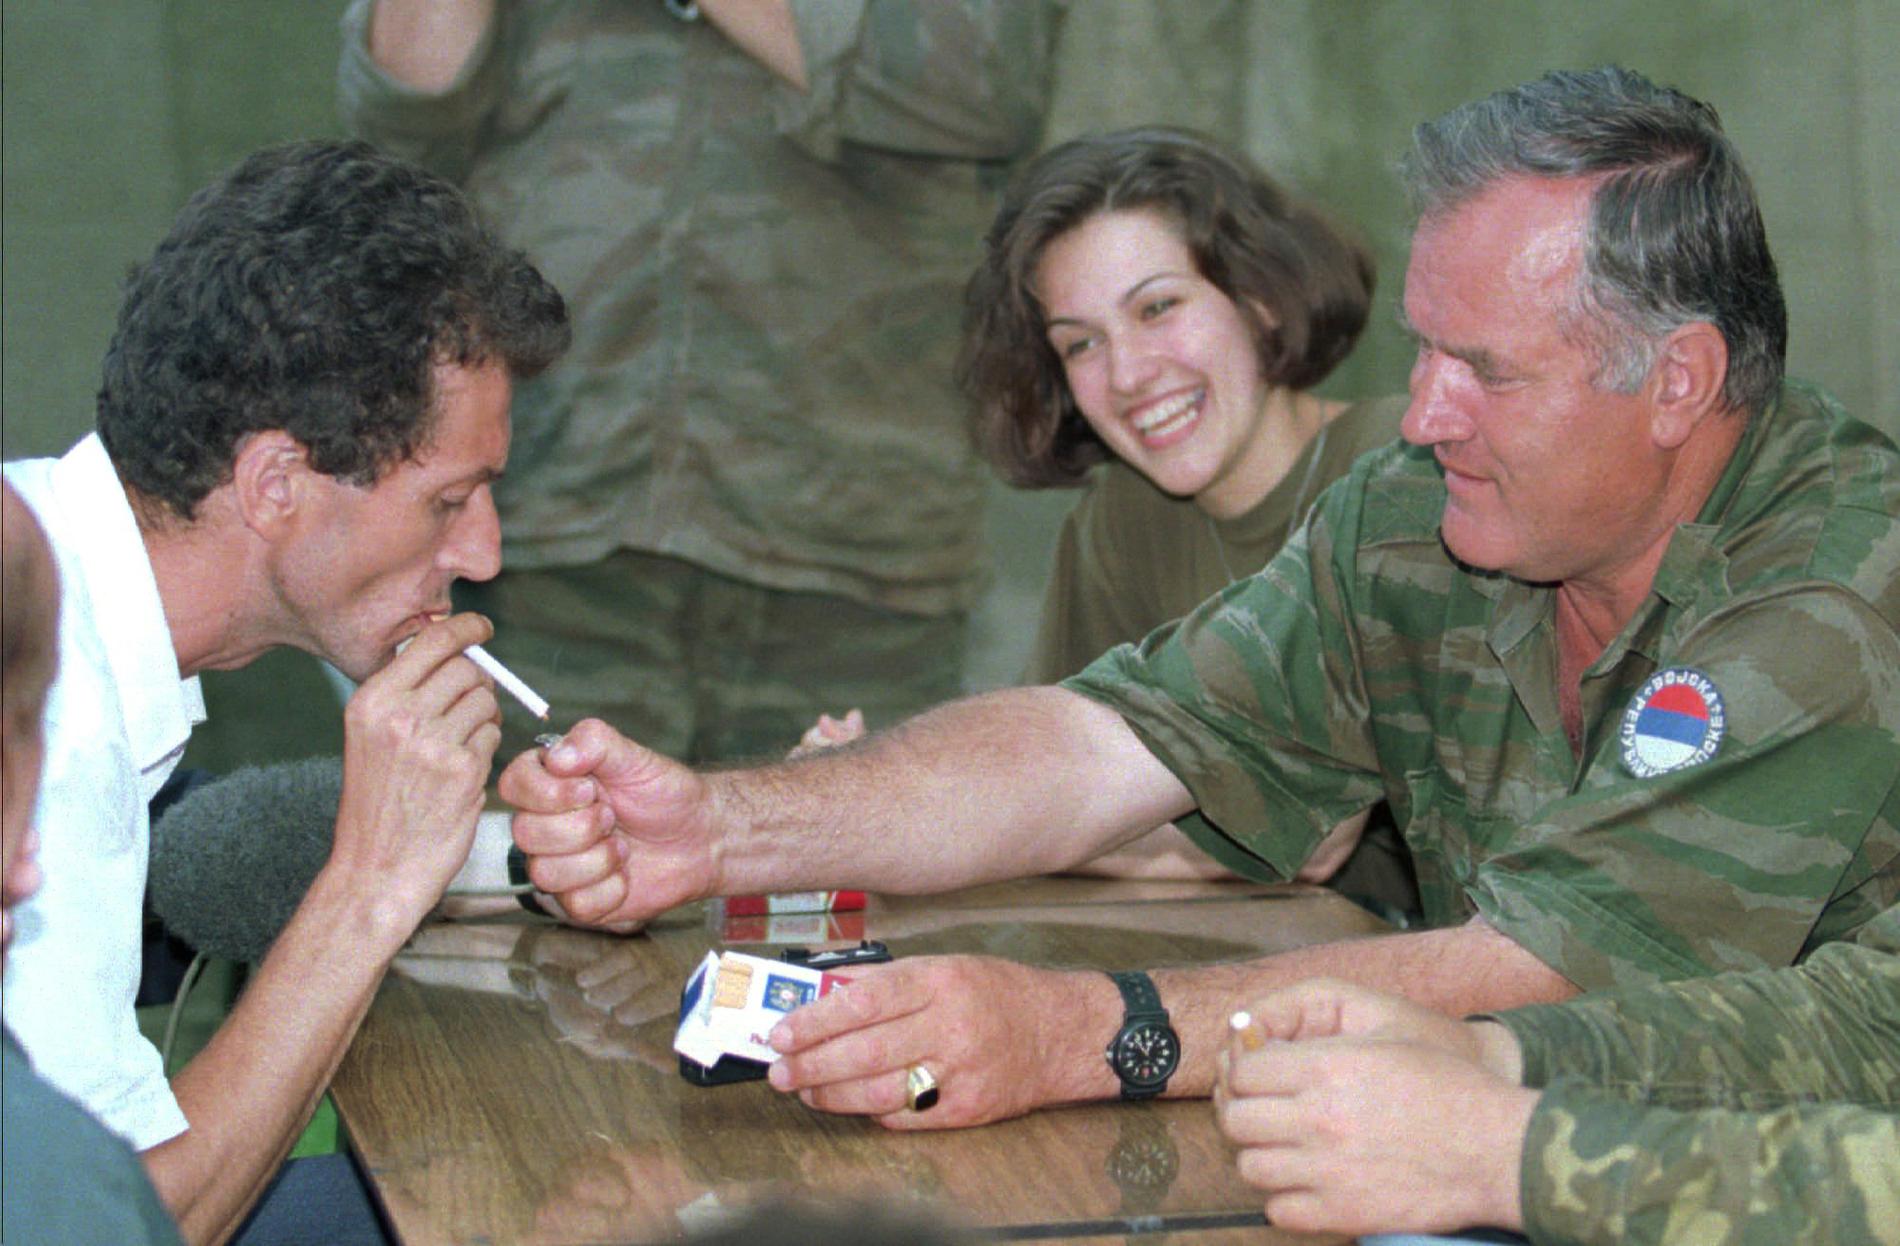 Mladic täder en cigarett åt Hamdija Torlak, ledare för Zepa-enklaven, ett FN-skyddat område som Mladics styrkor intog i juli 1995.